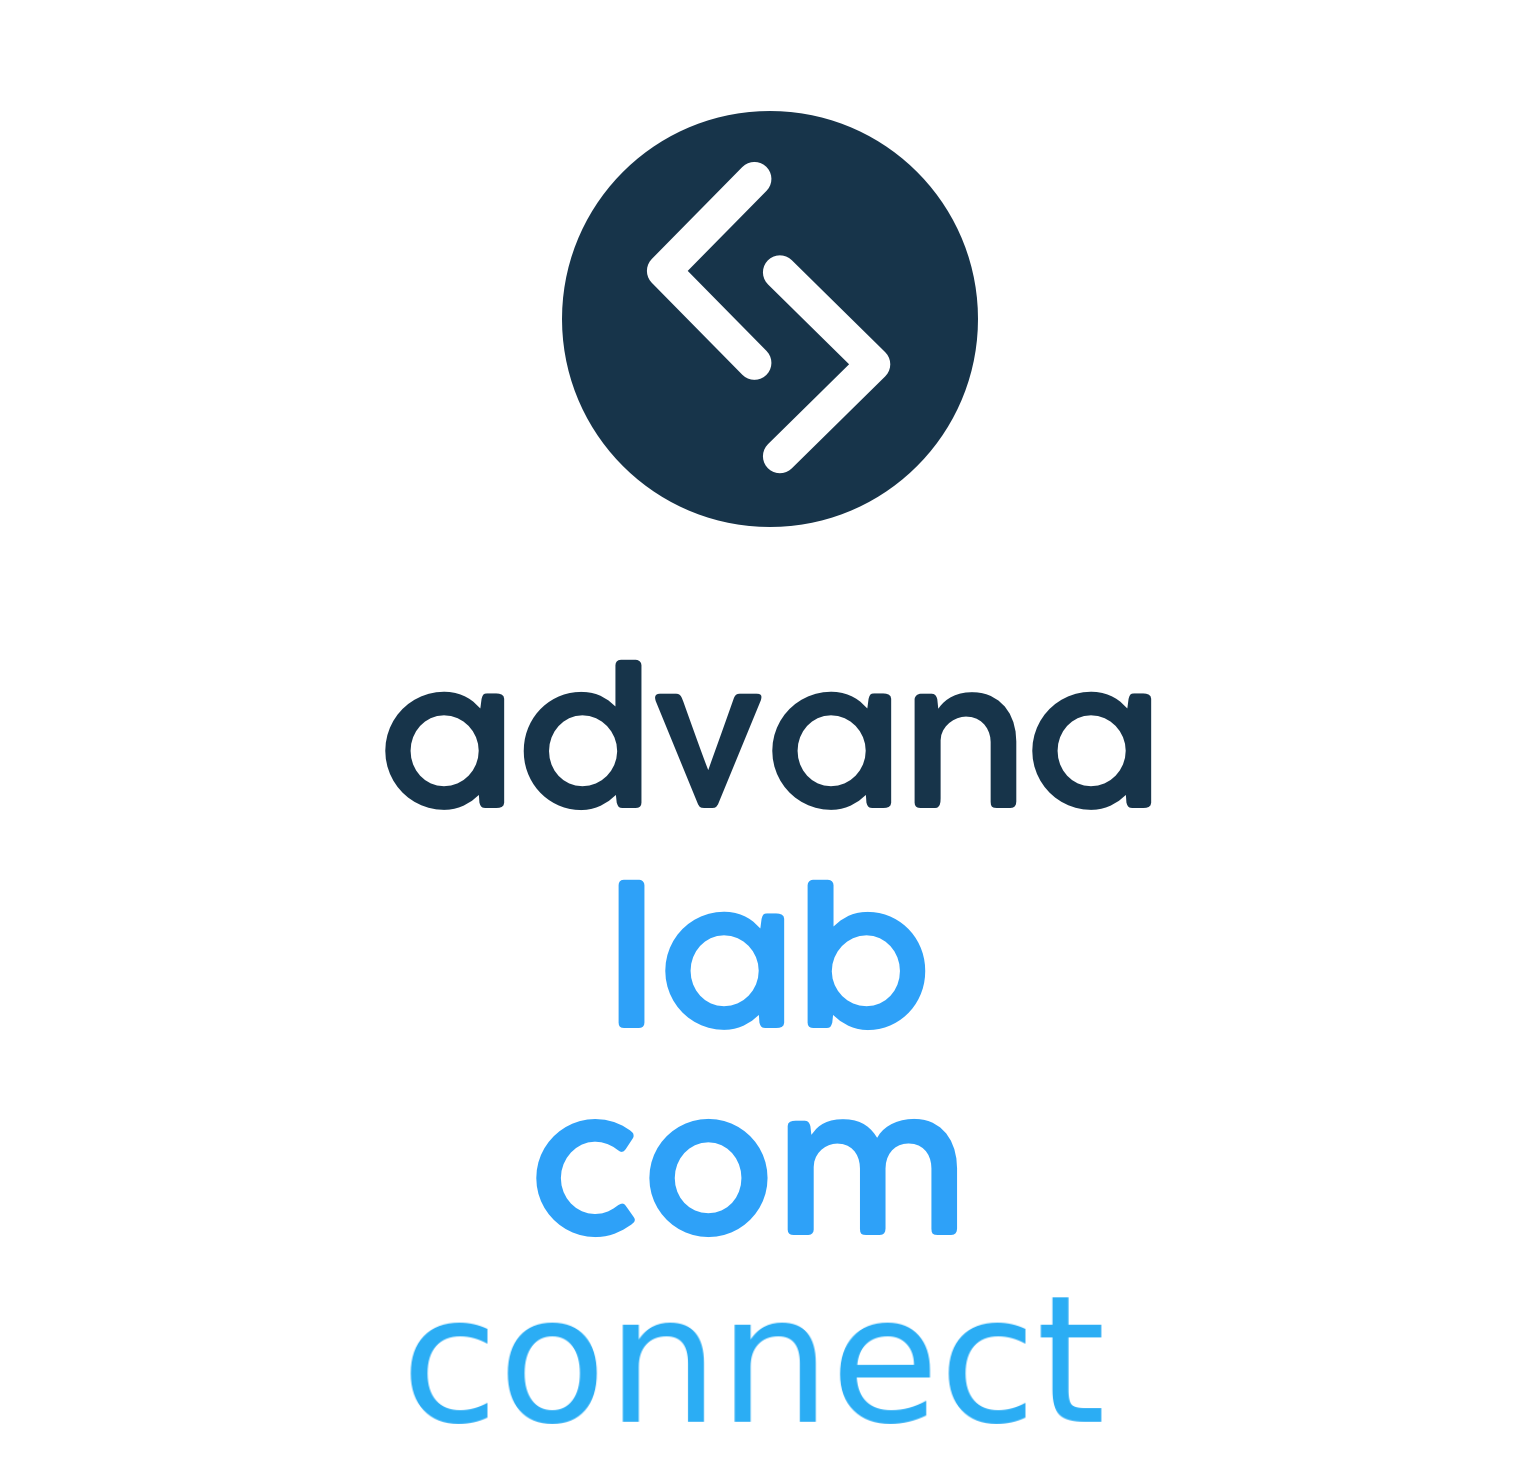 Advana lab